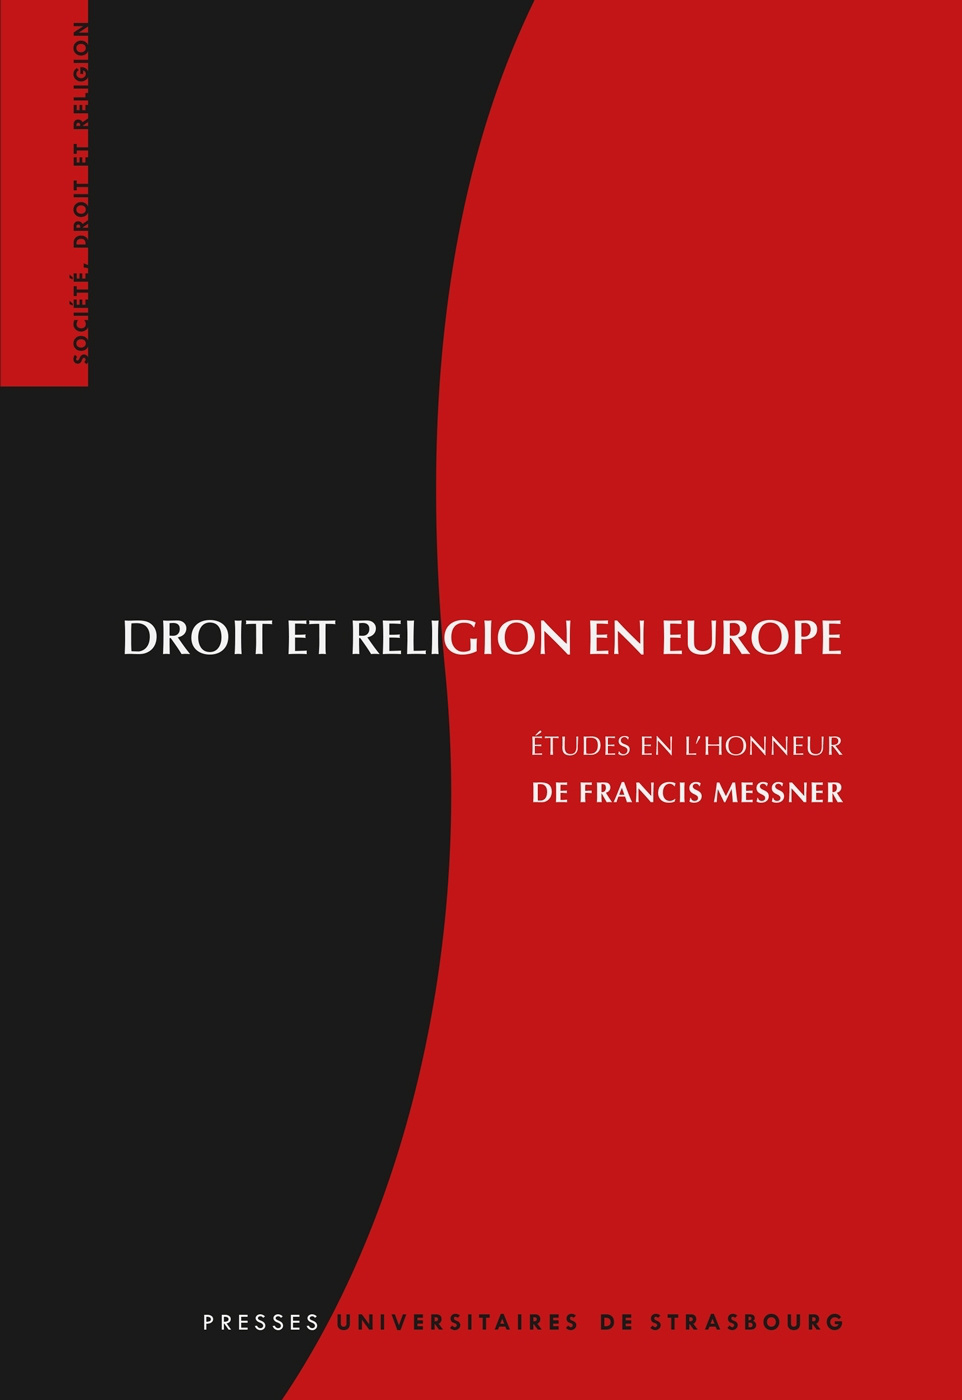 Droit et religion en Europe. Études en l'honneur de Francis Messner